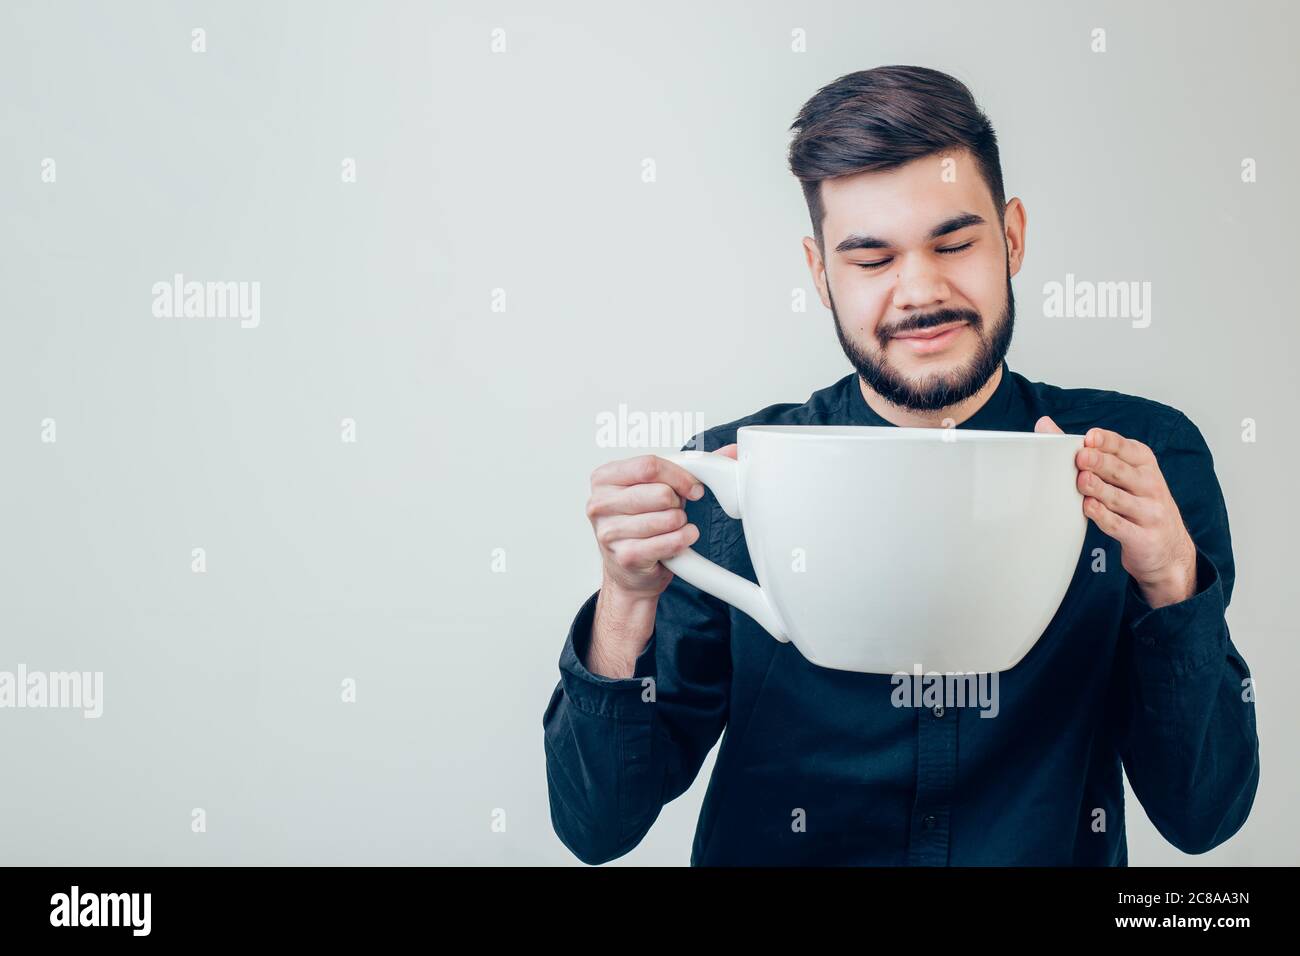 giovane uomo d'affari felice che tiene una tazza enorme e divertente di caffè nero oversize in concetto di dipendenza da caffeina isolato su sfondo uniforme Foto Stock